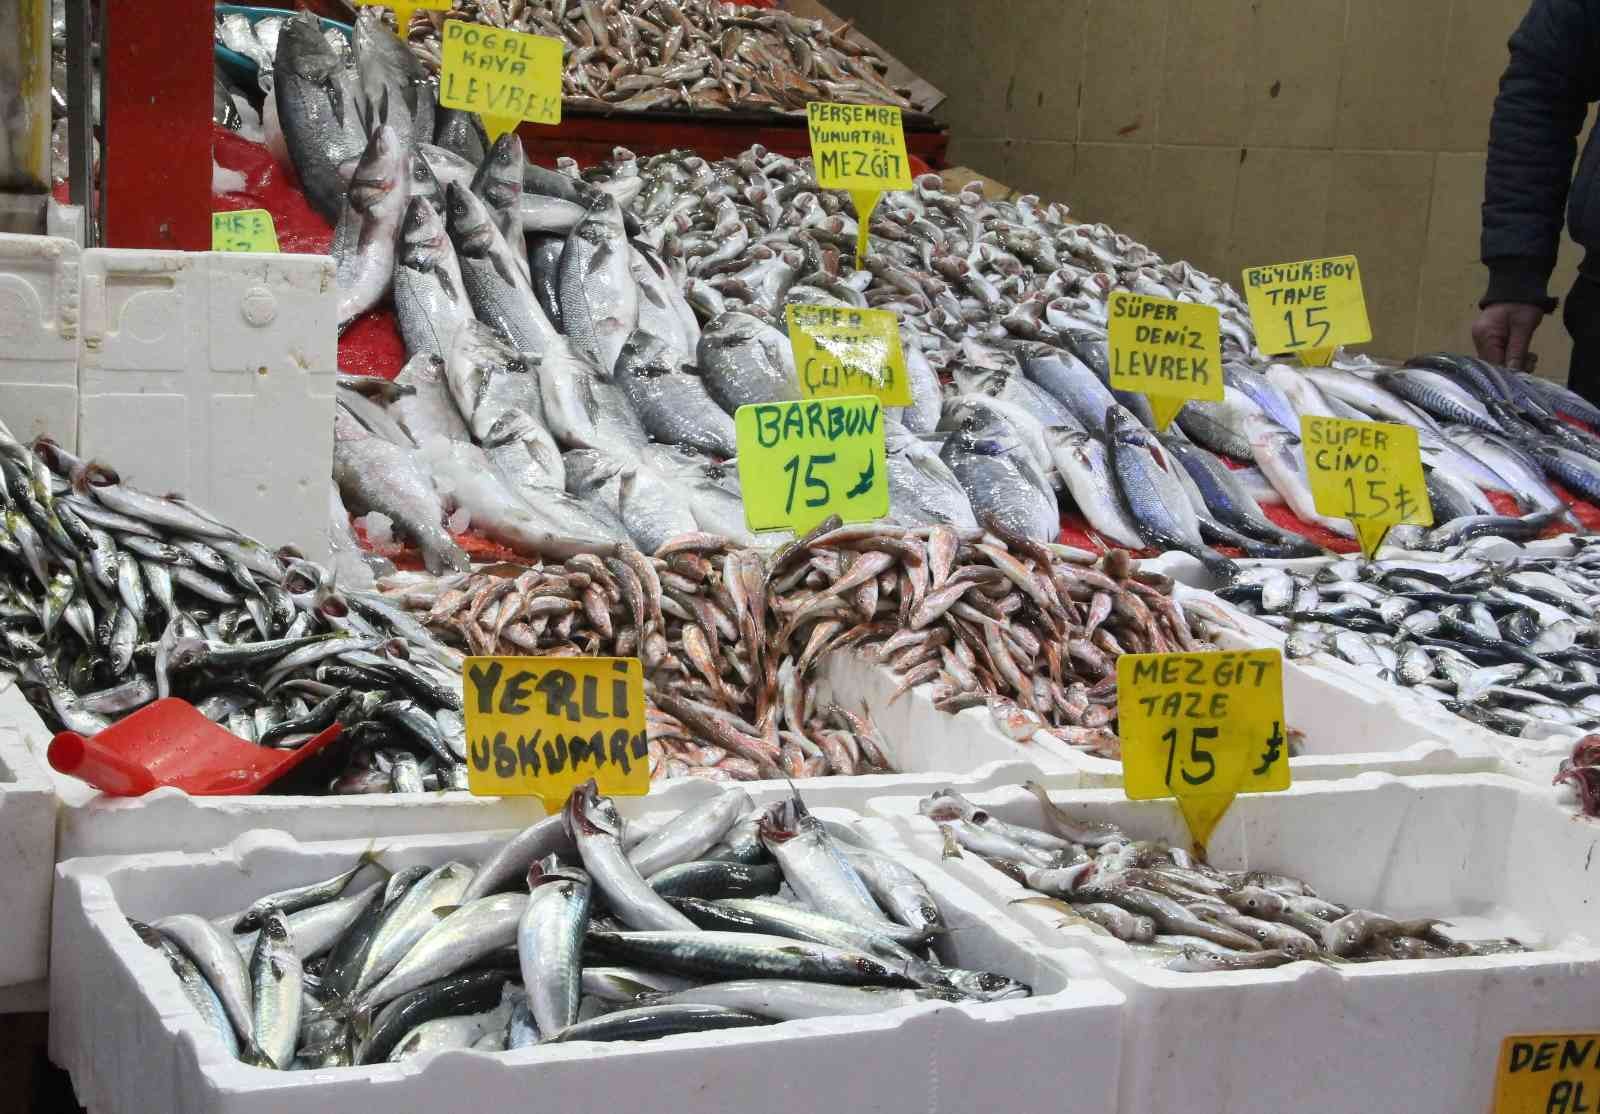 Balık tezgahlarında enflasyon yok: 3 balık çeşidi 15 lira
